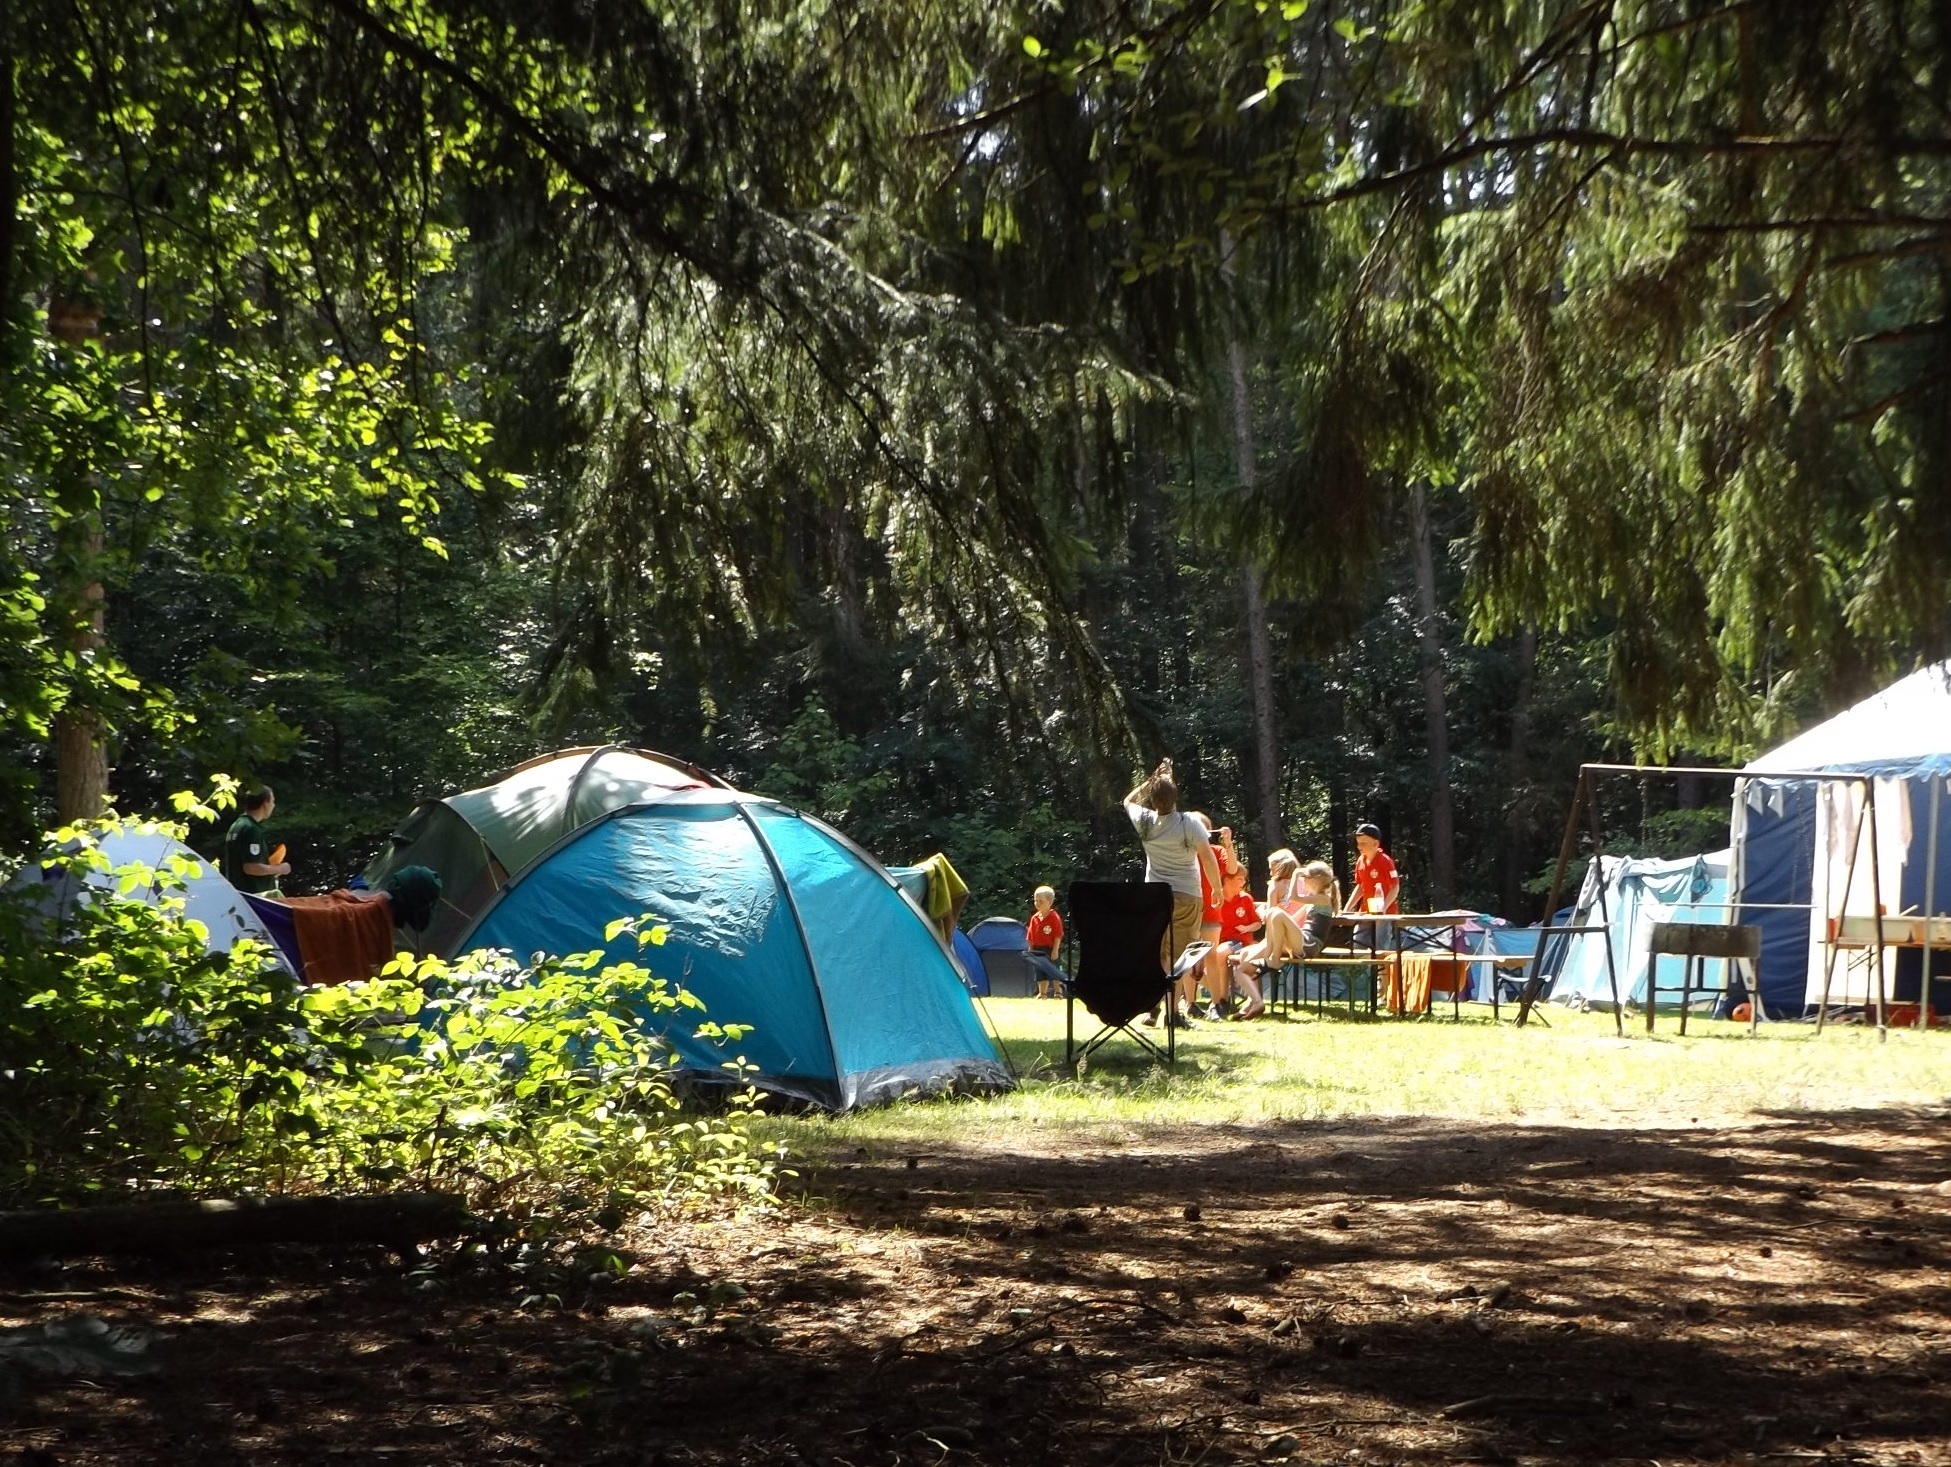 タープ・焚き火・テント…機能的で快適なキャンプレイアウトとは